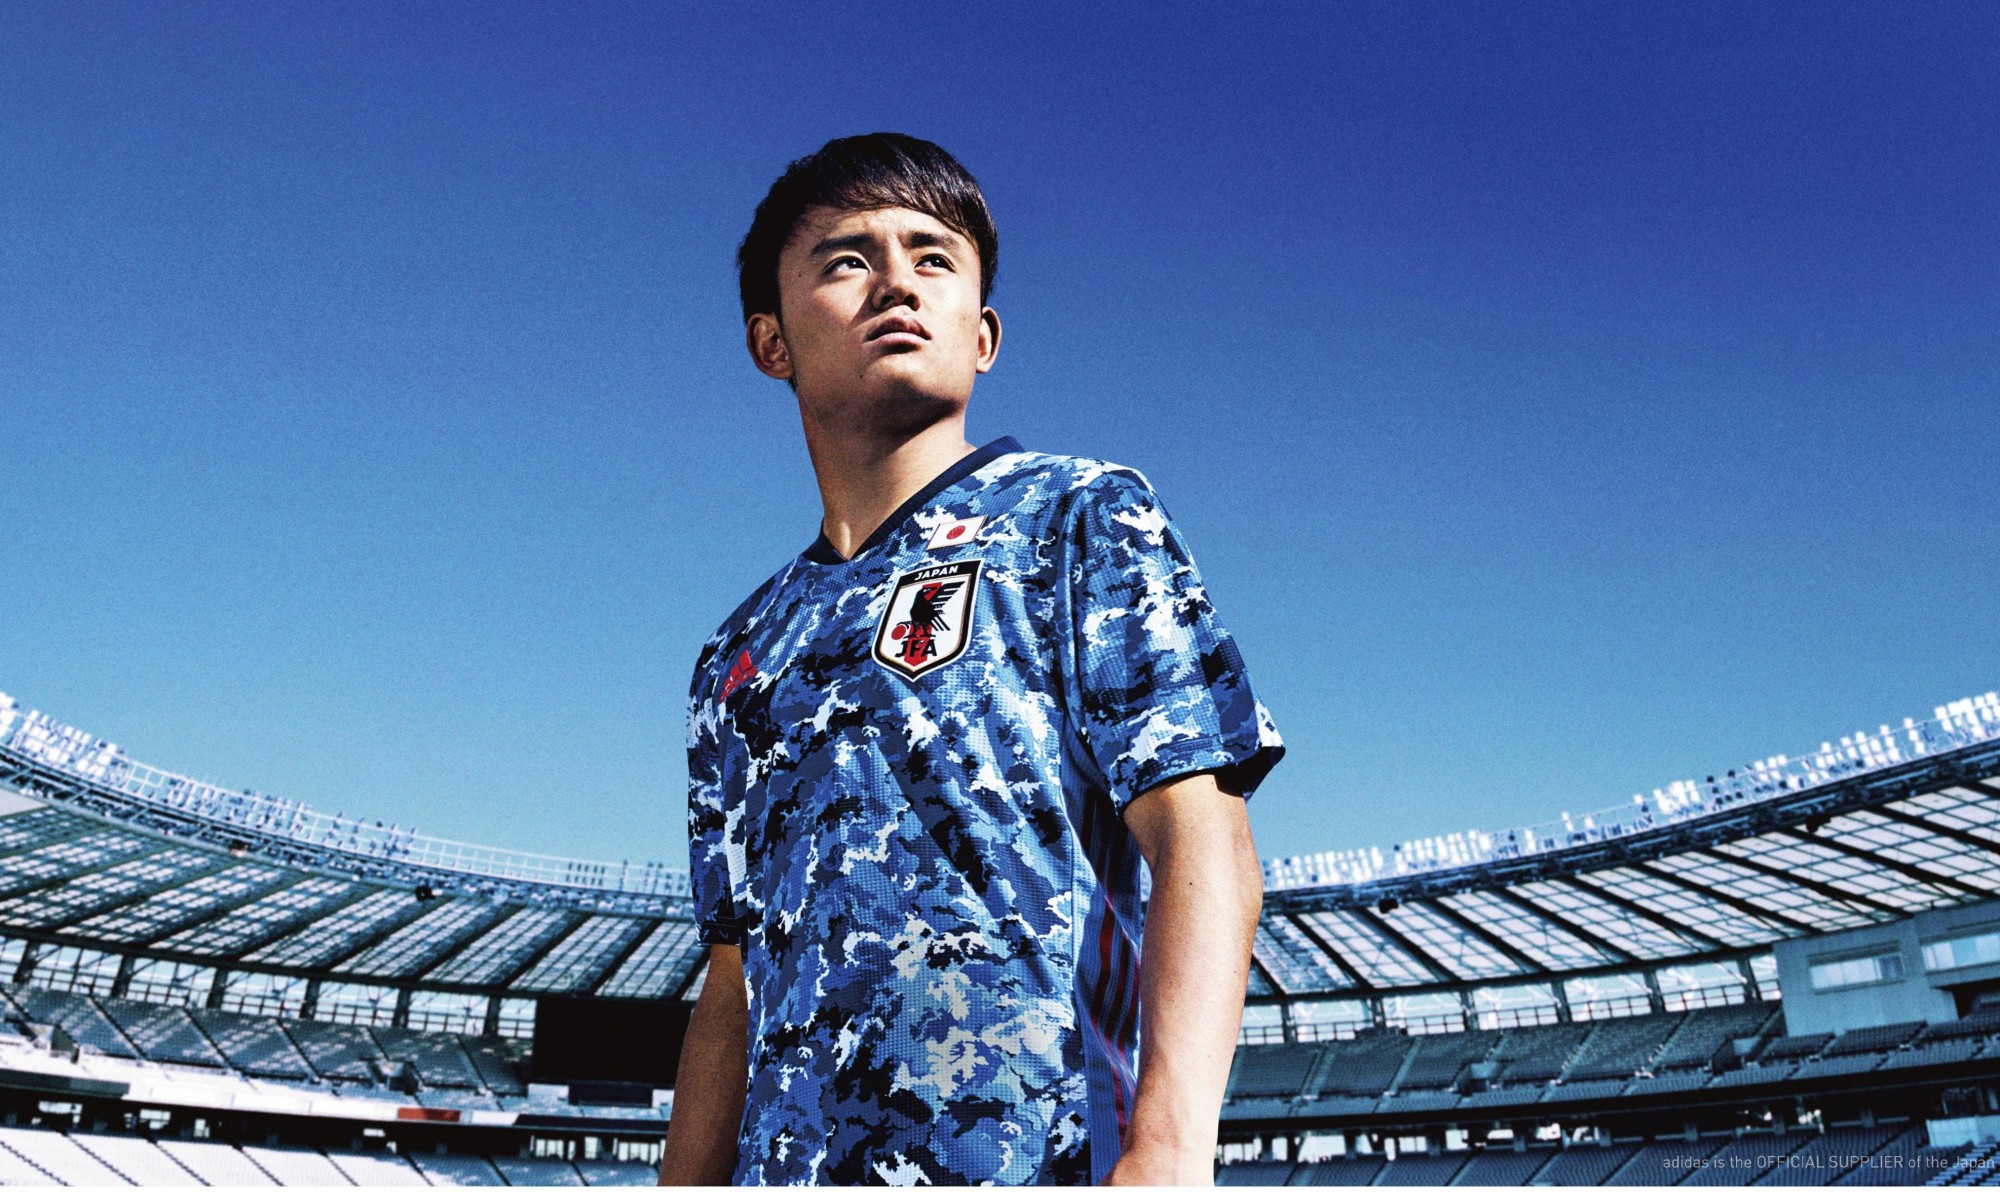 Efectivamente Aviación después de esto JFA unveils 'Clear Sky Japan' uniform for 2020 Olympics | The Japan Times